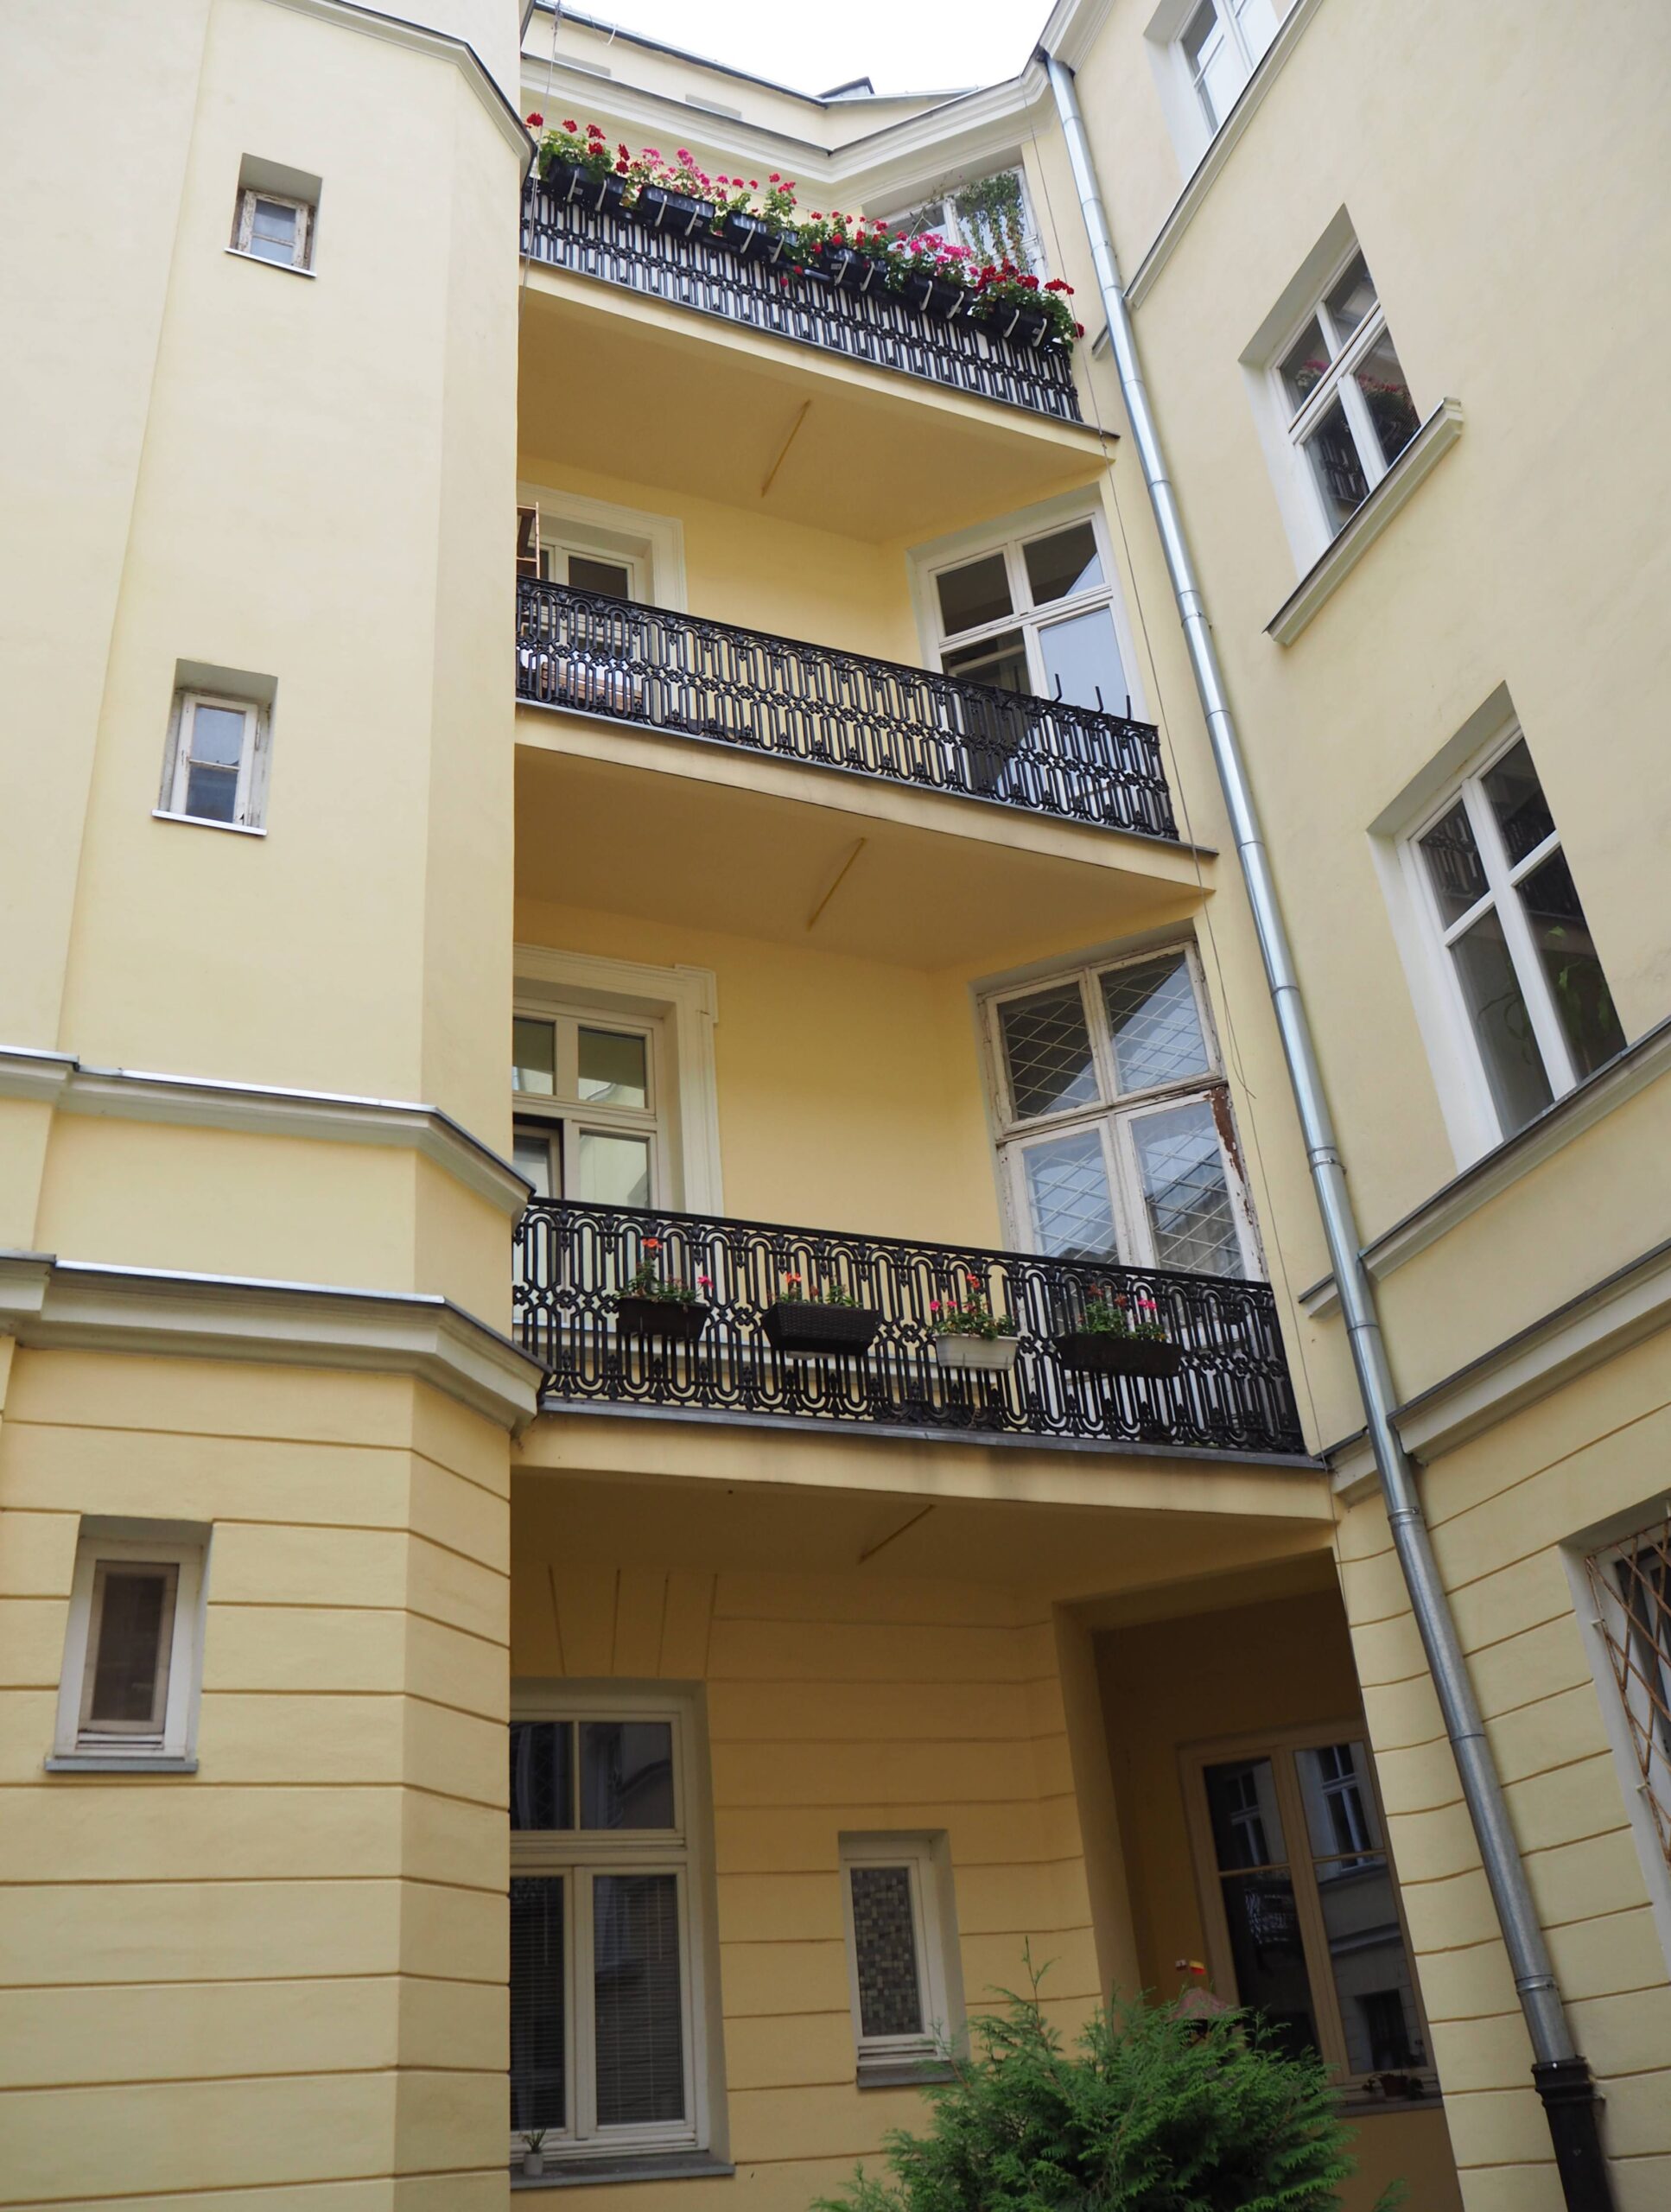 Podwórze. Oficyna zachodnia - wyższa (północna). Balkony z żeliwnymi balustradami. Fot. Agnieszka Dziubiel 2022 r., źródło: AOD III.